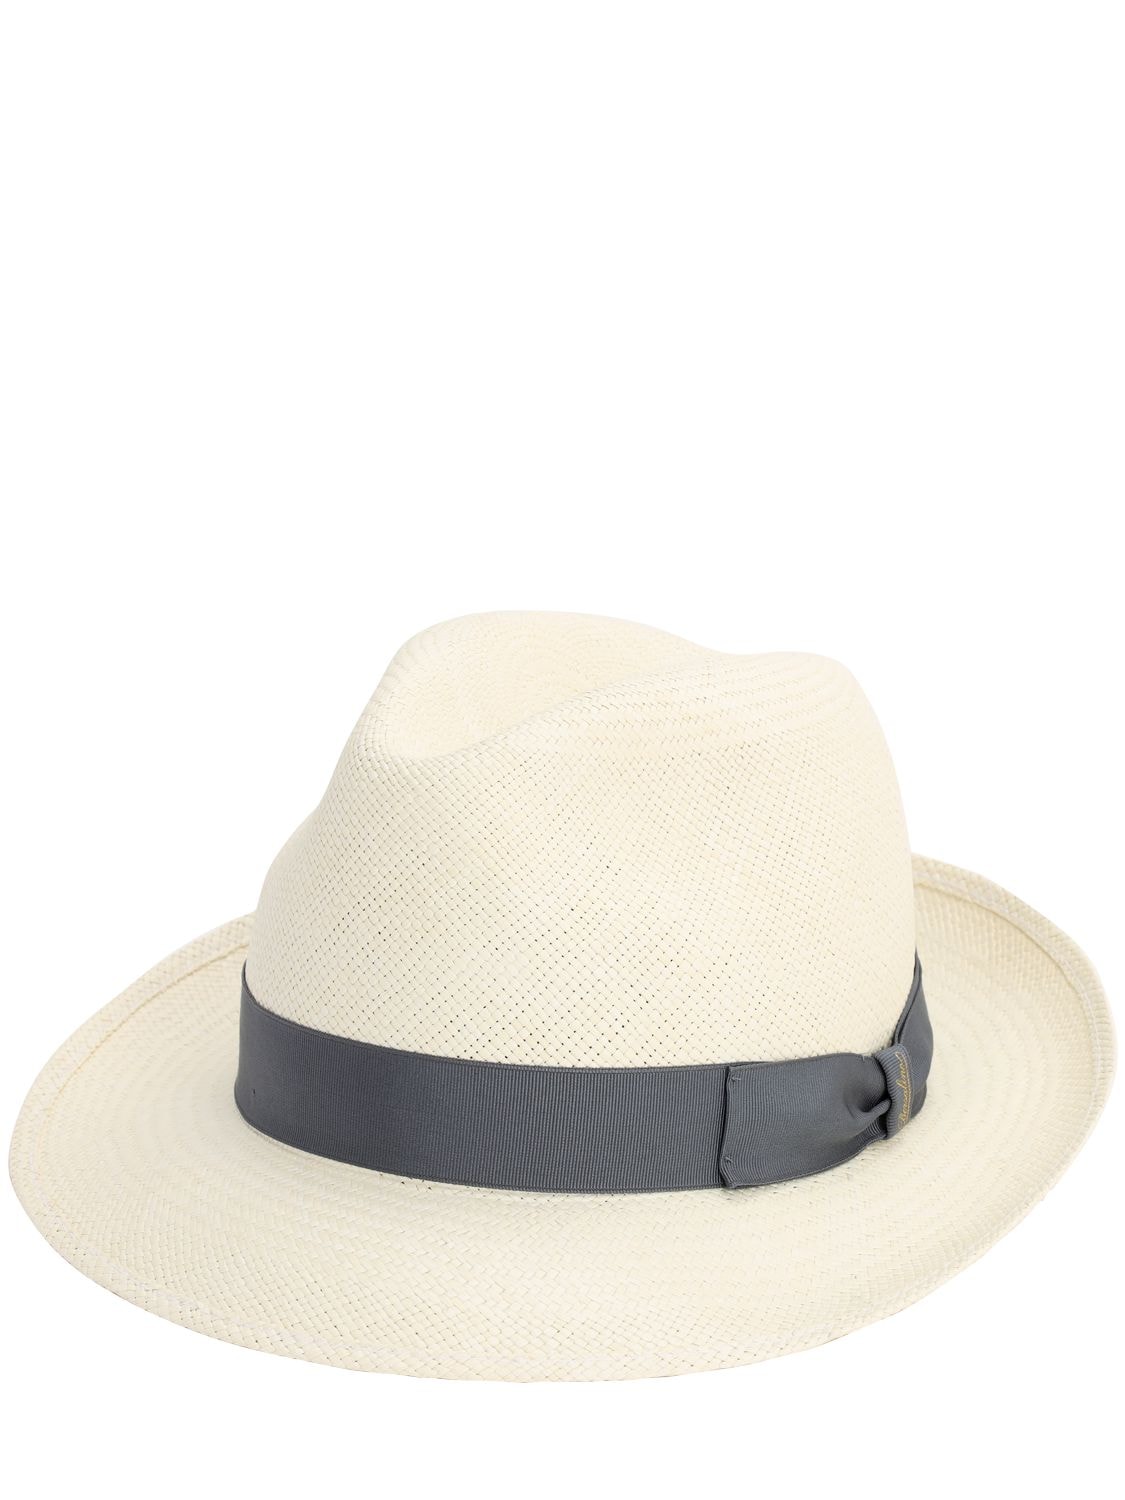 Borsalino Quito Medium Brim Straw Panama Hat In White,blue